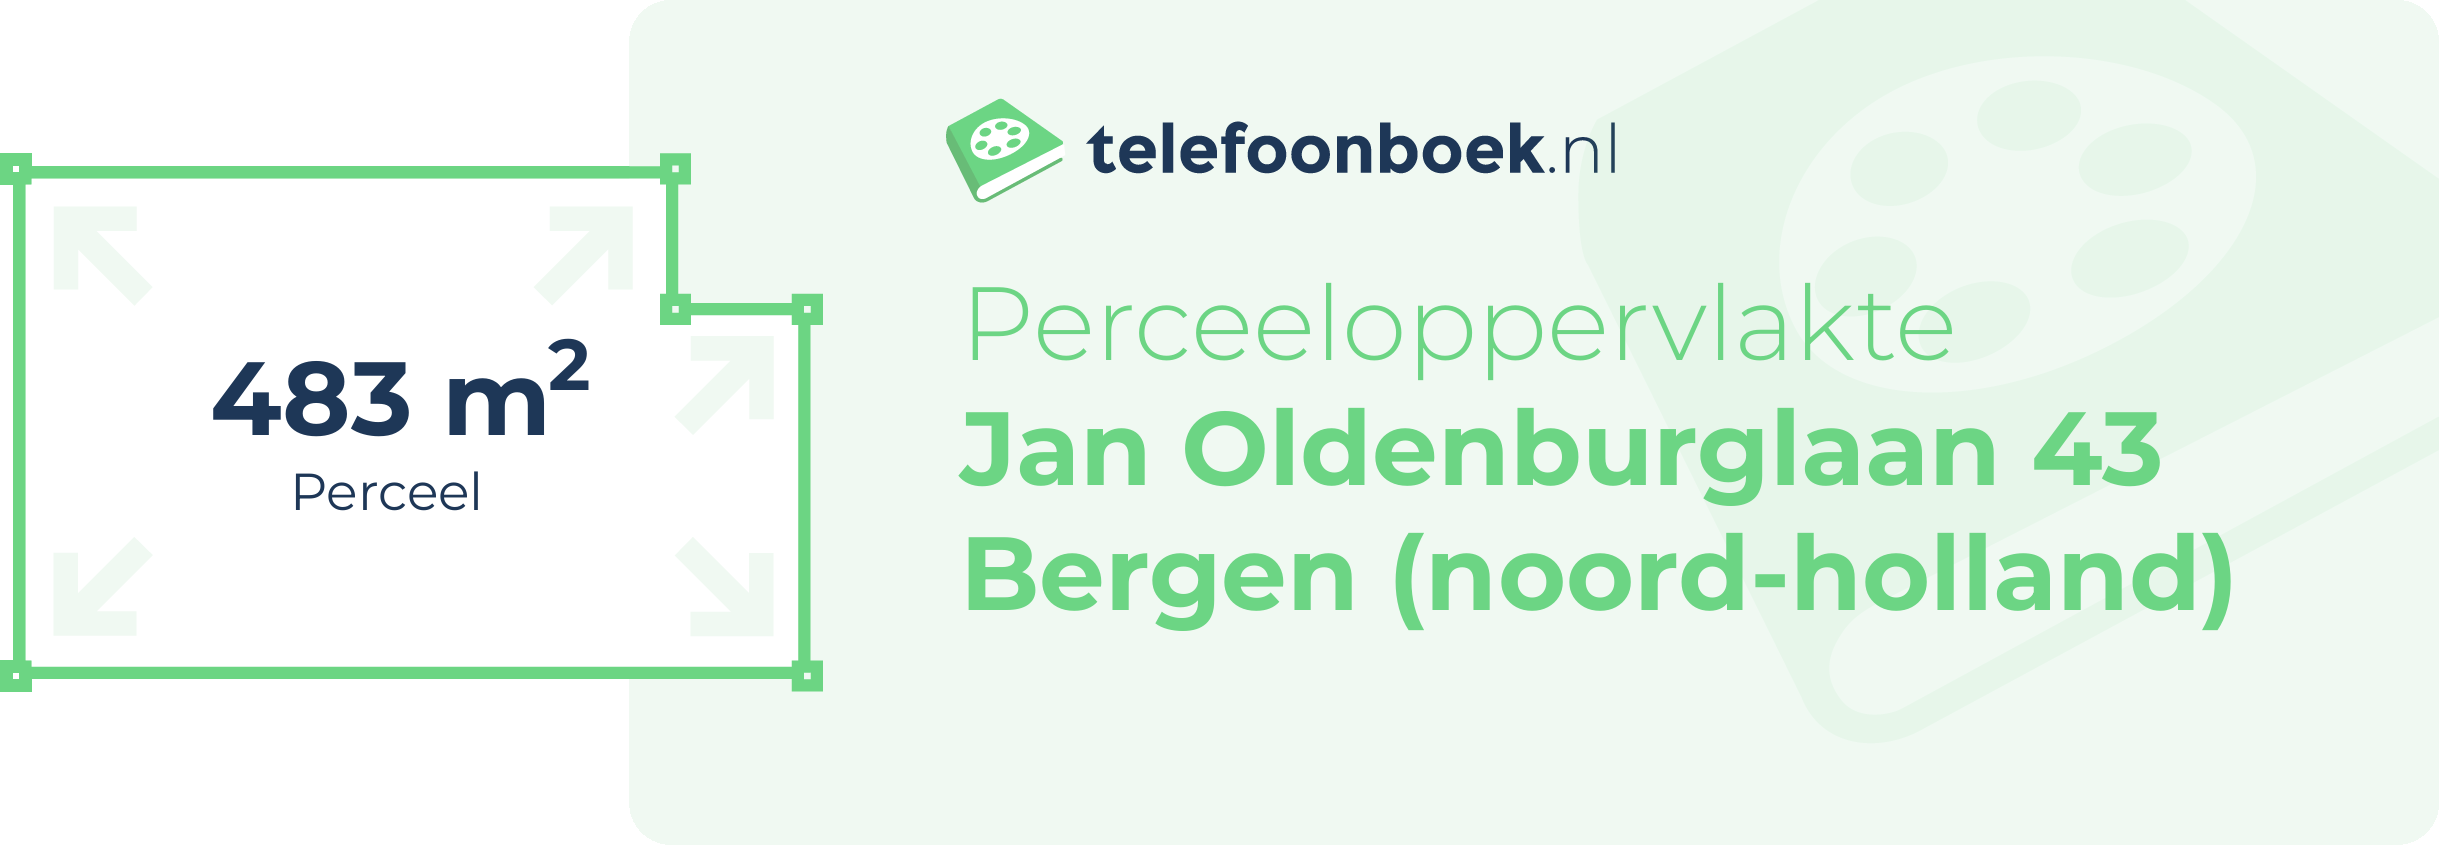 Perceeloppervlakte Jan Oldenburglaan 43 Bergen (Noord-Holland)